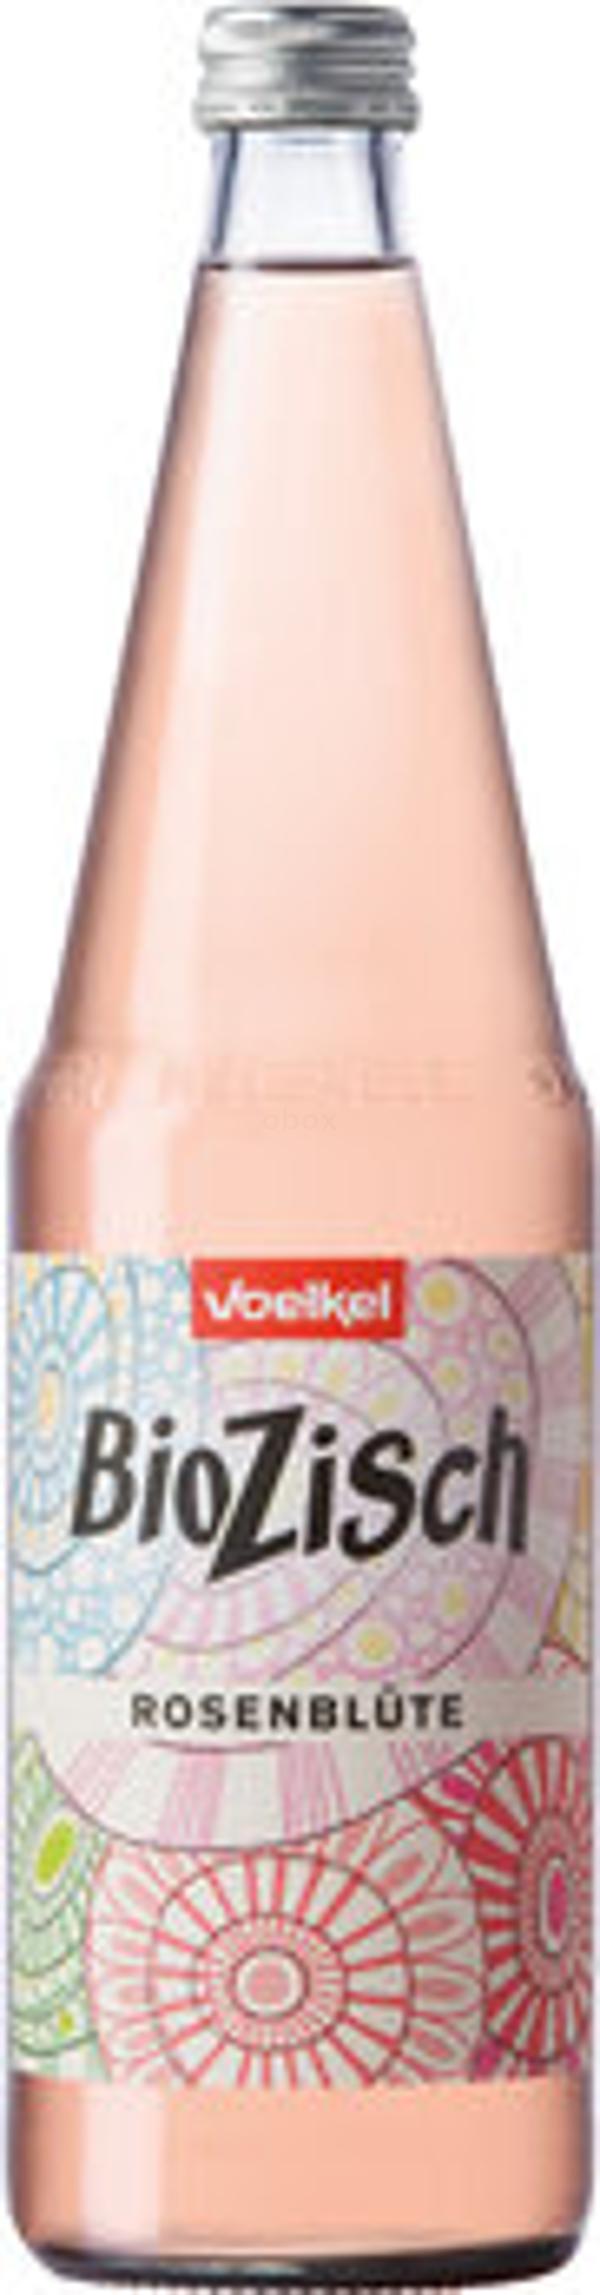 Produktfoto zu BioZisch Rosenblüte, 0,7l